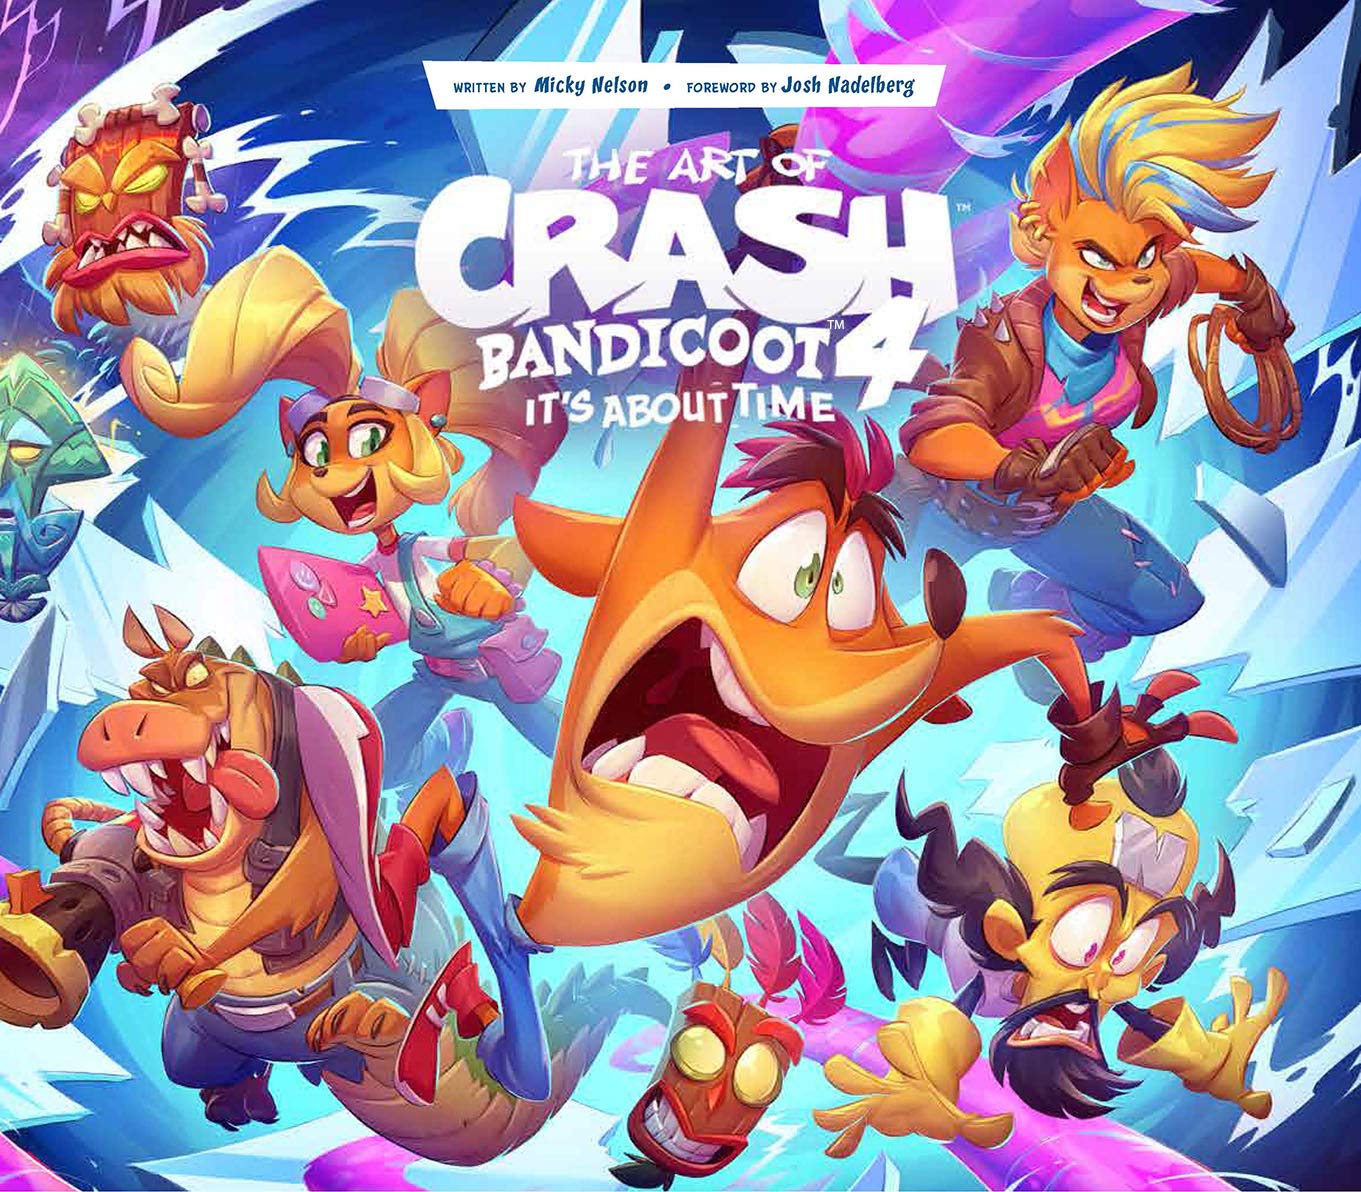 jaquette du jeu vidéo Crash Bandicoot 4 : It's About Time